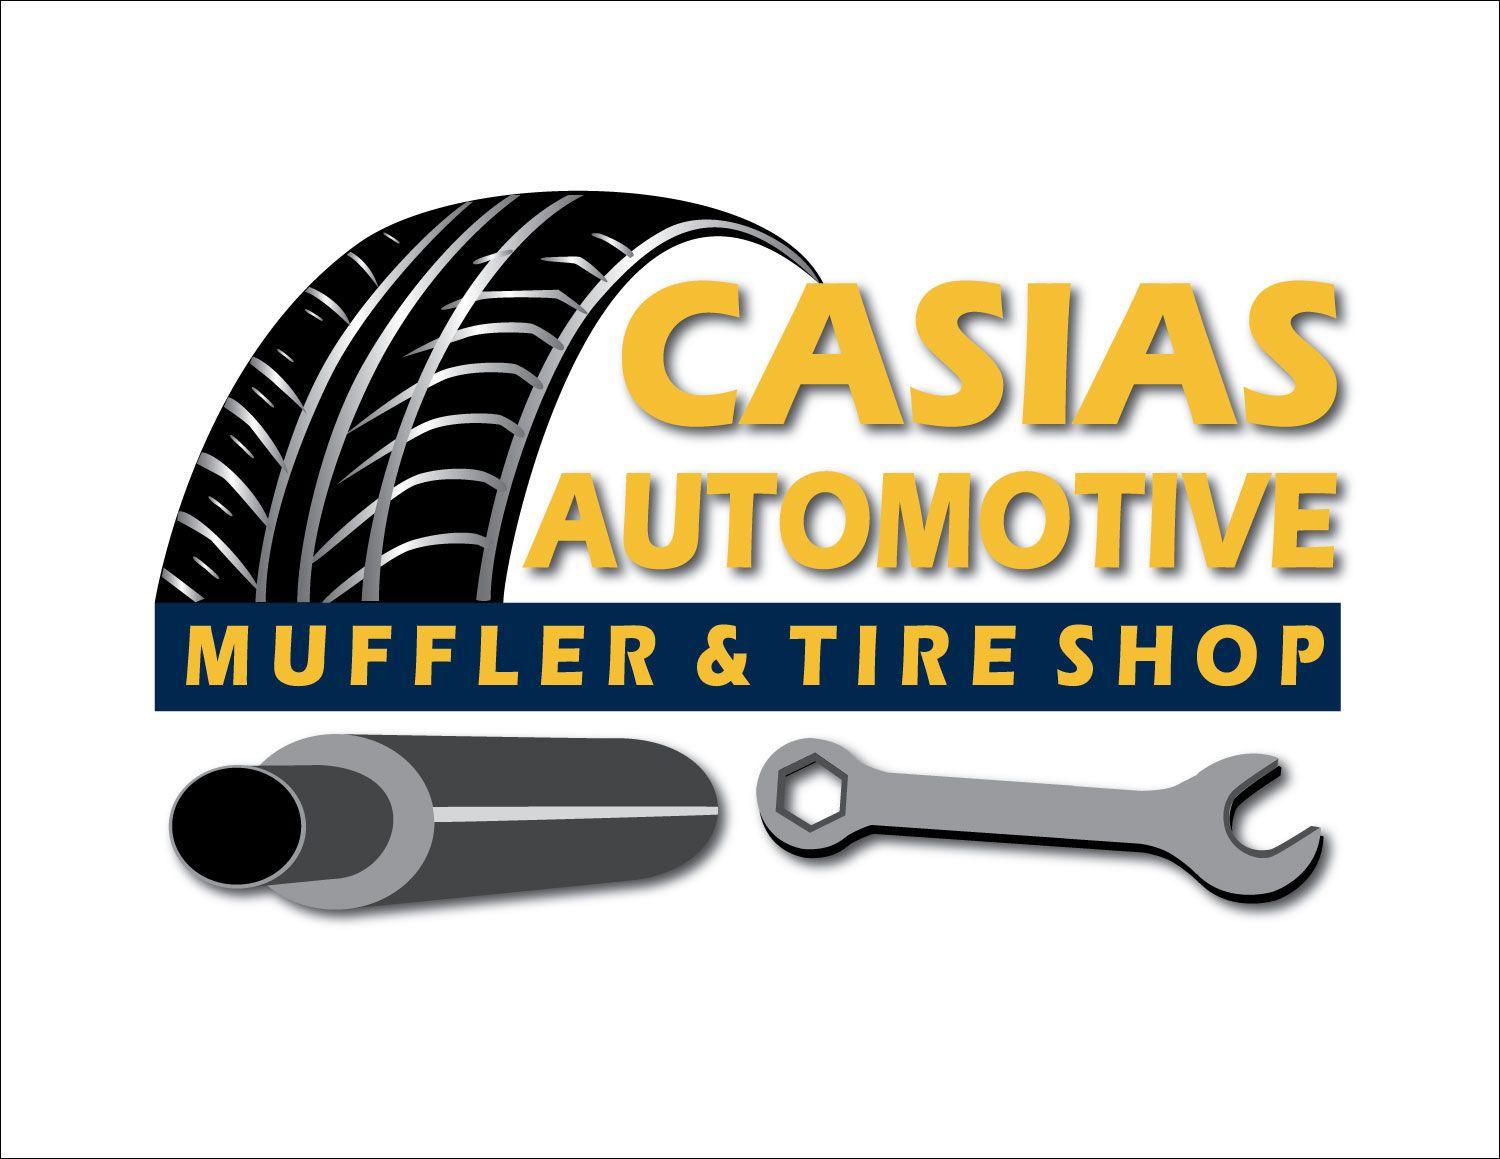 Automotive Tire Shop Logo - Casias Tire Shop | Better Business Bureau® Profile